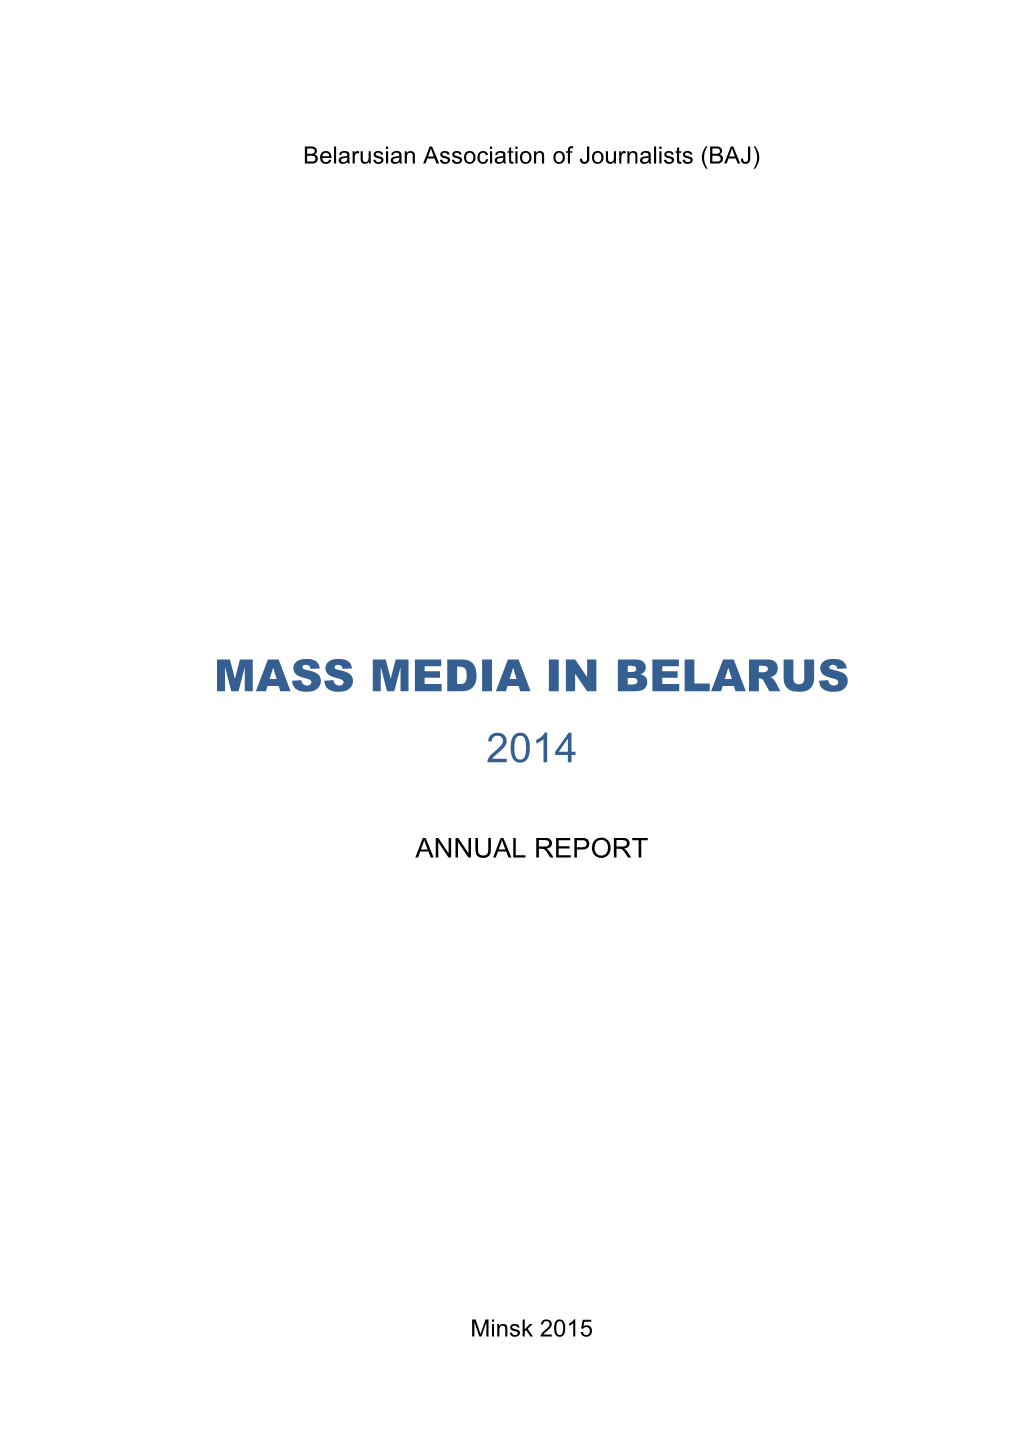 Mass Media in Belarus 2014